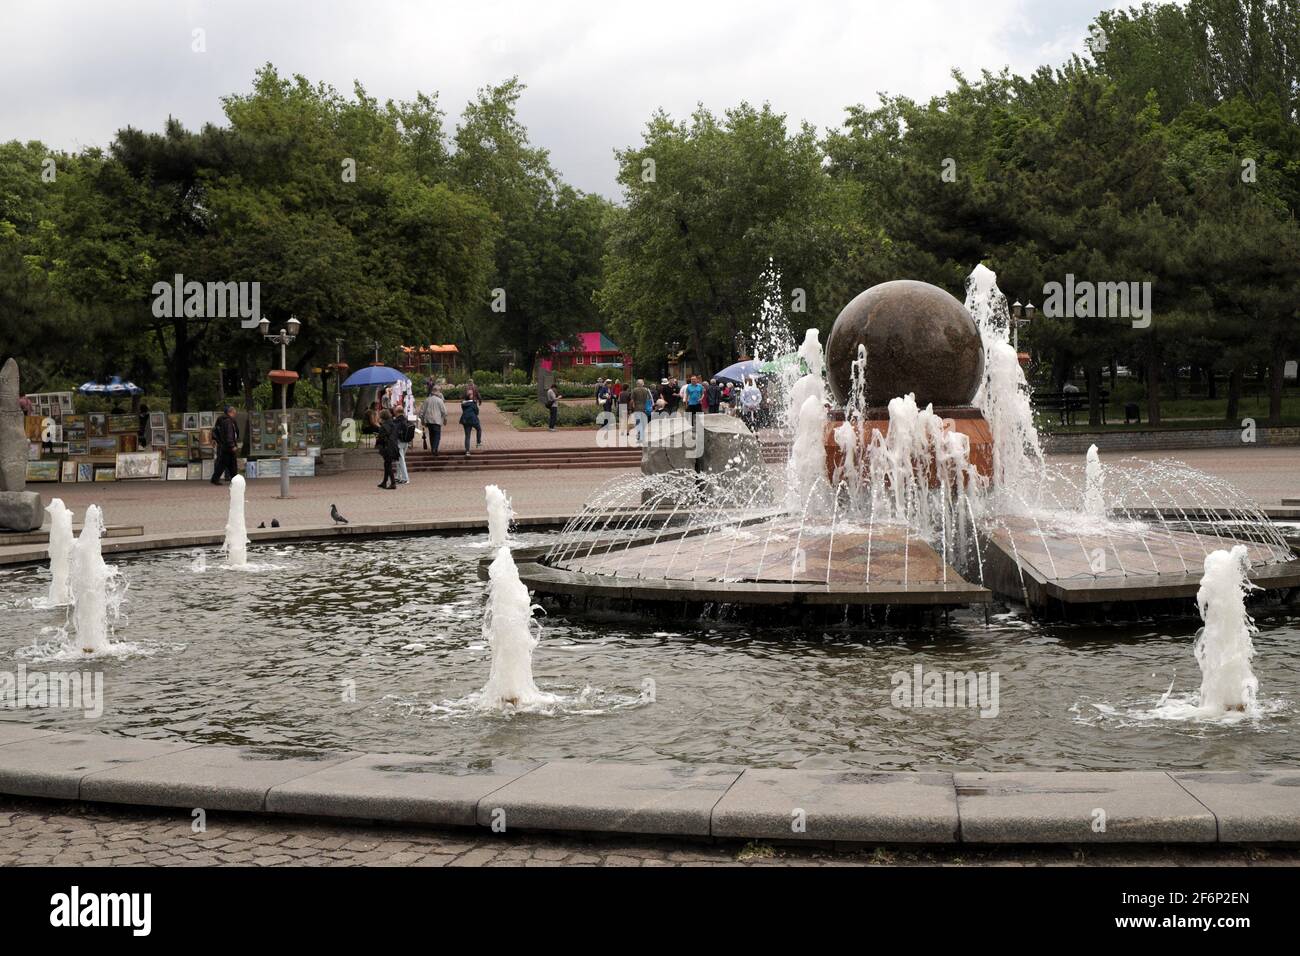 Fountain in a public park, Zaporozhye, Ukraine. Stock Photo